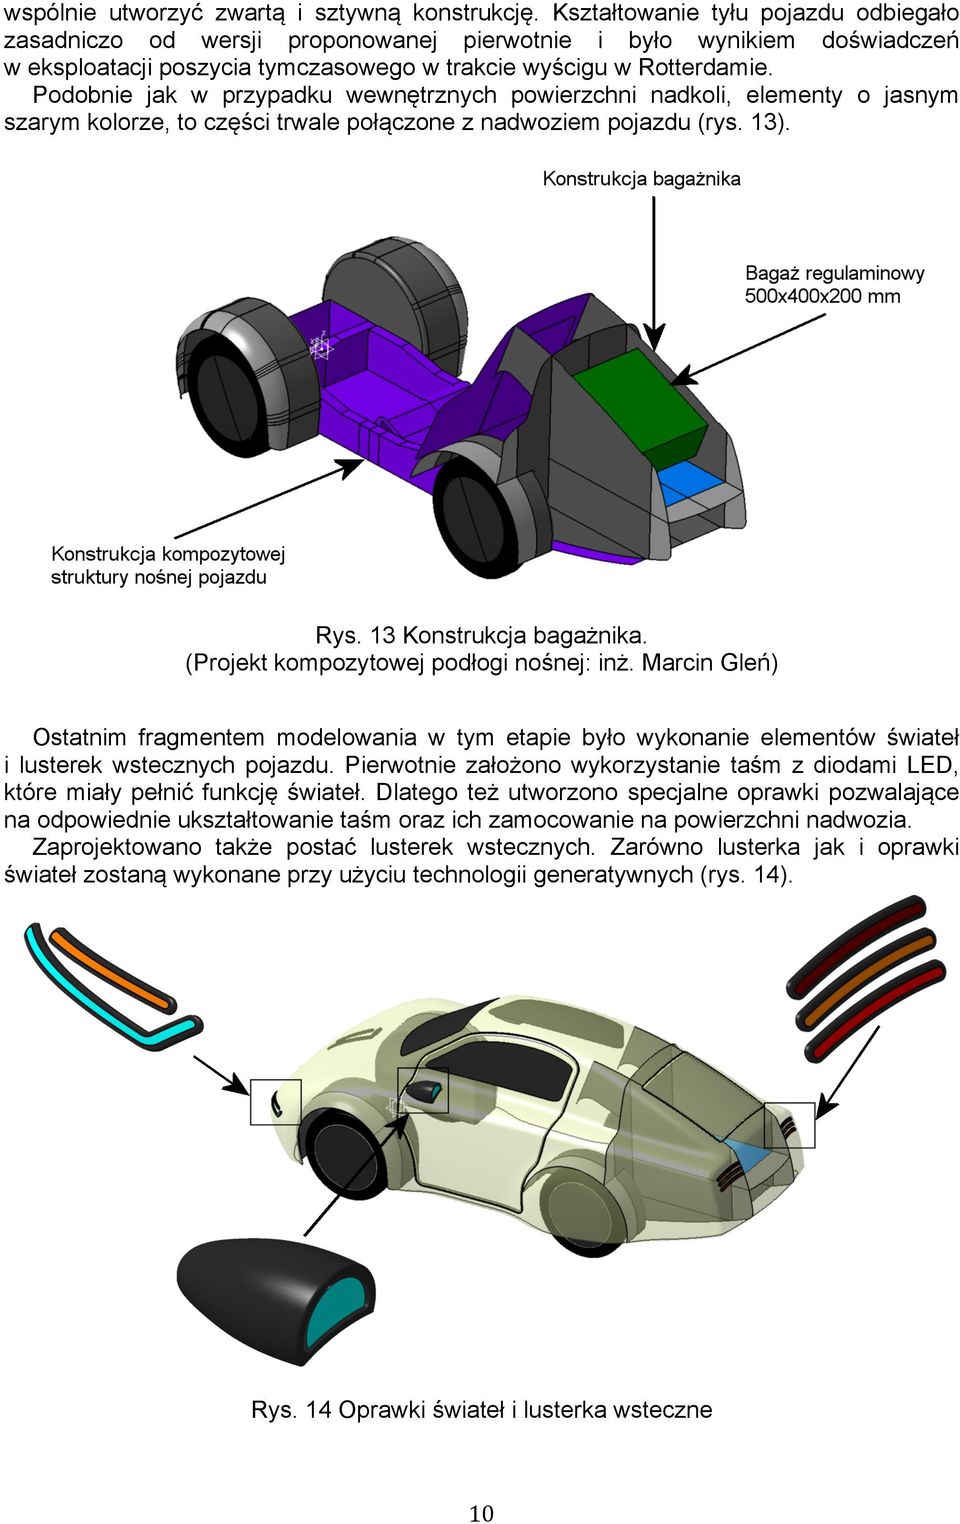 Podobnie jak w przypadku wewnętrznych powierzchni nadkoli, elementy o jasnym szarym kolorze, to części trwale połączone z nadwoziem pojazdu (rys. 13). Rys. 13 Konstrukcja bagażnika.